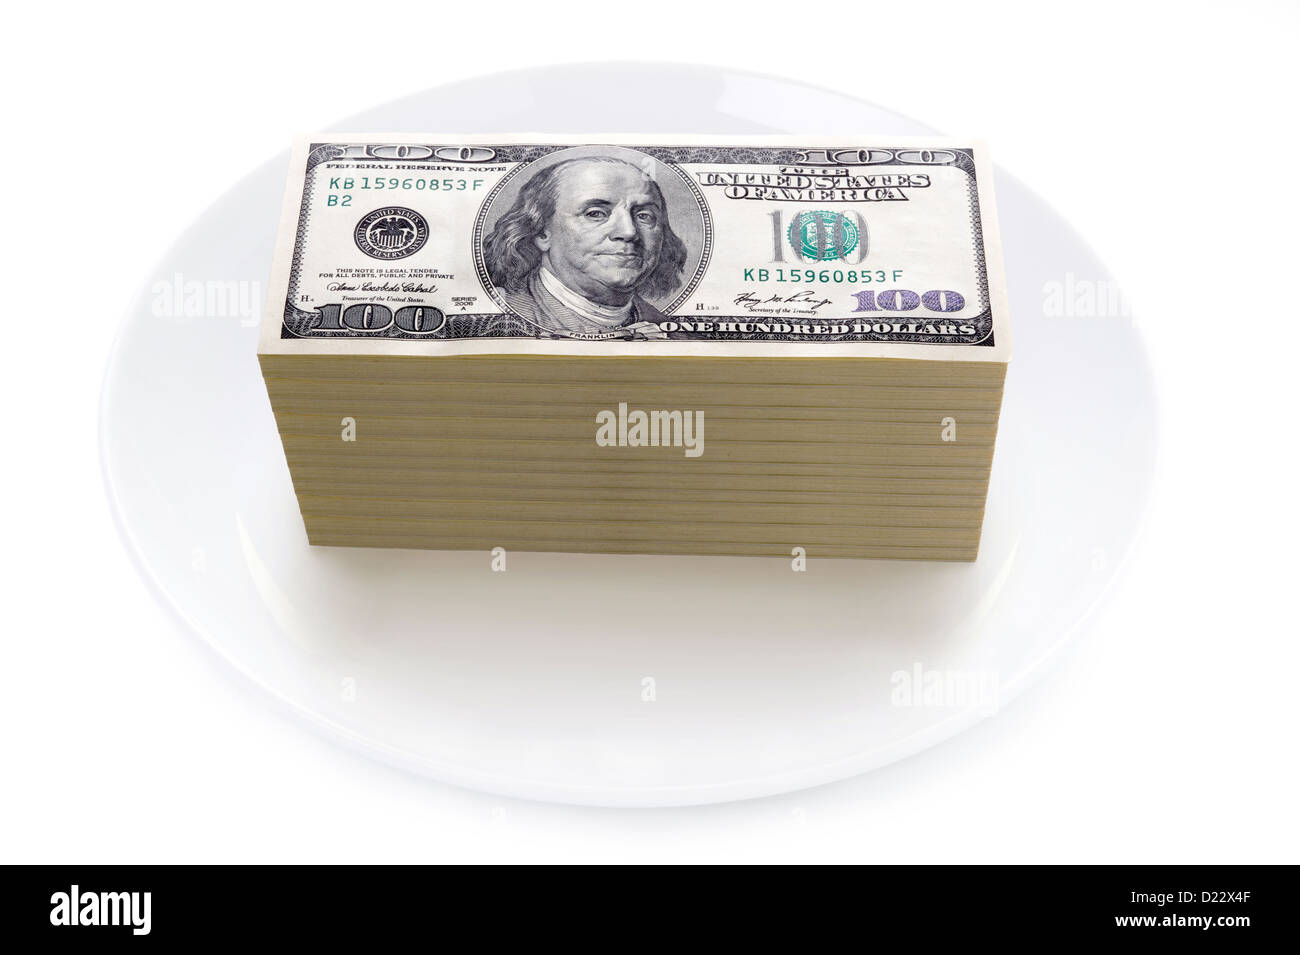 Prix des aliments ou des prix de l'alimentation pile de concept one hundred dollar bills sur une plaque isolés contre fond blanc Banque D'Images